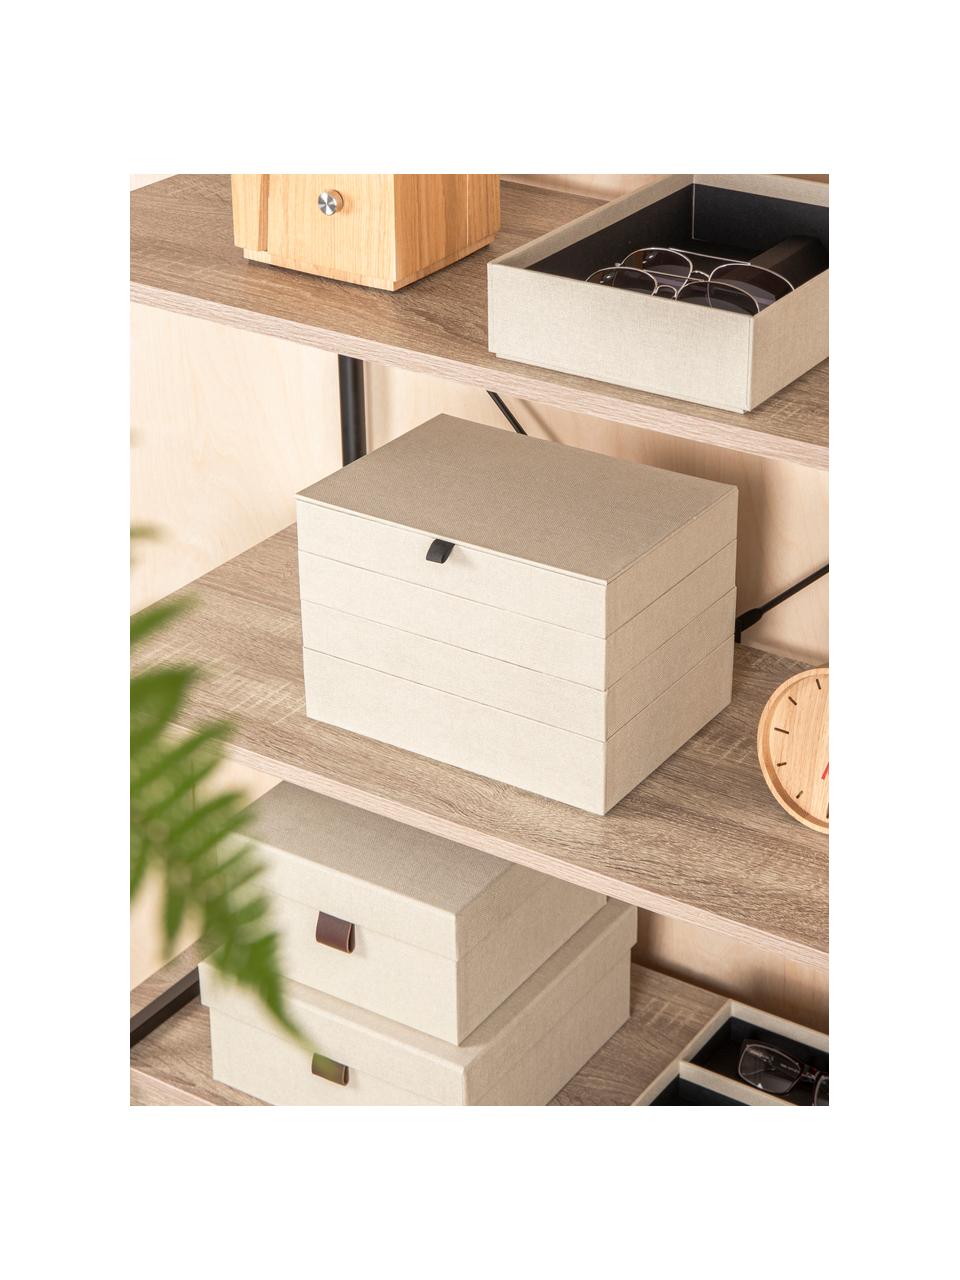 Schmuckbox Precious mit Magnet-Verschluss, Fester Karton, Hellbeige, B 27 x T 19 cm